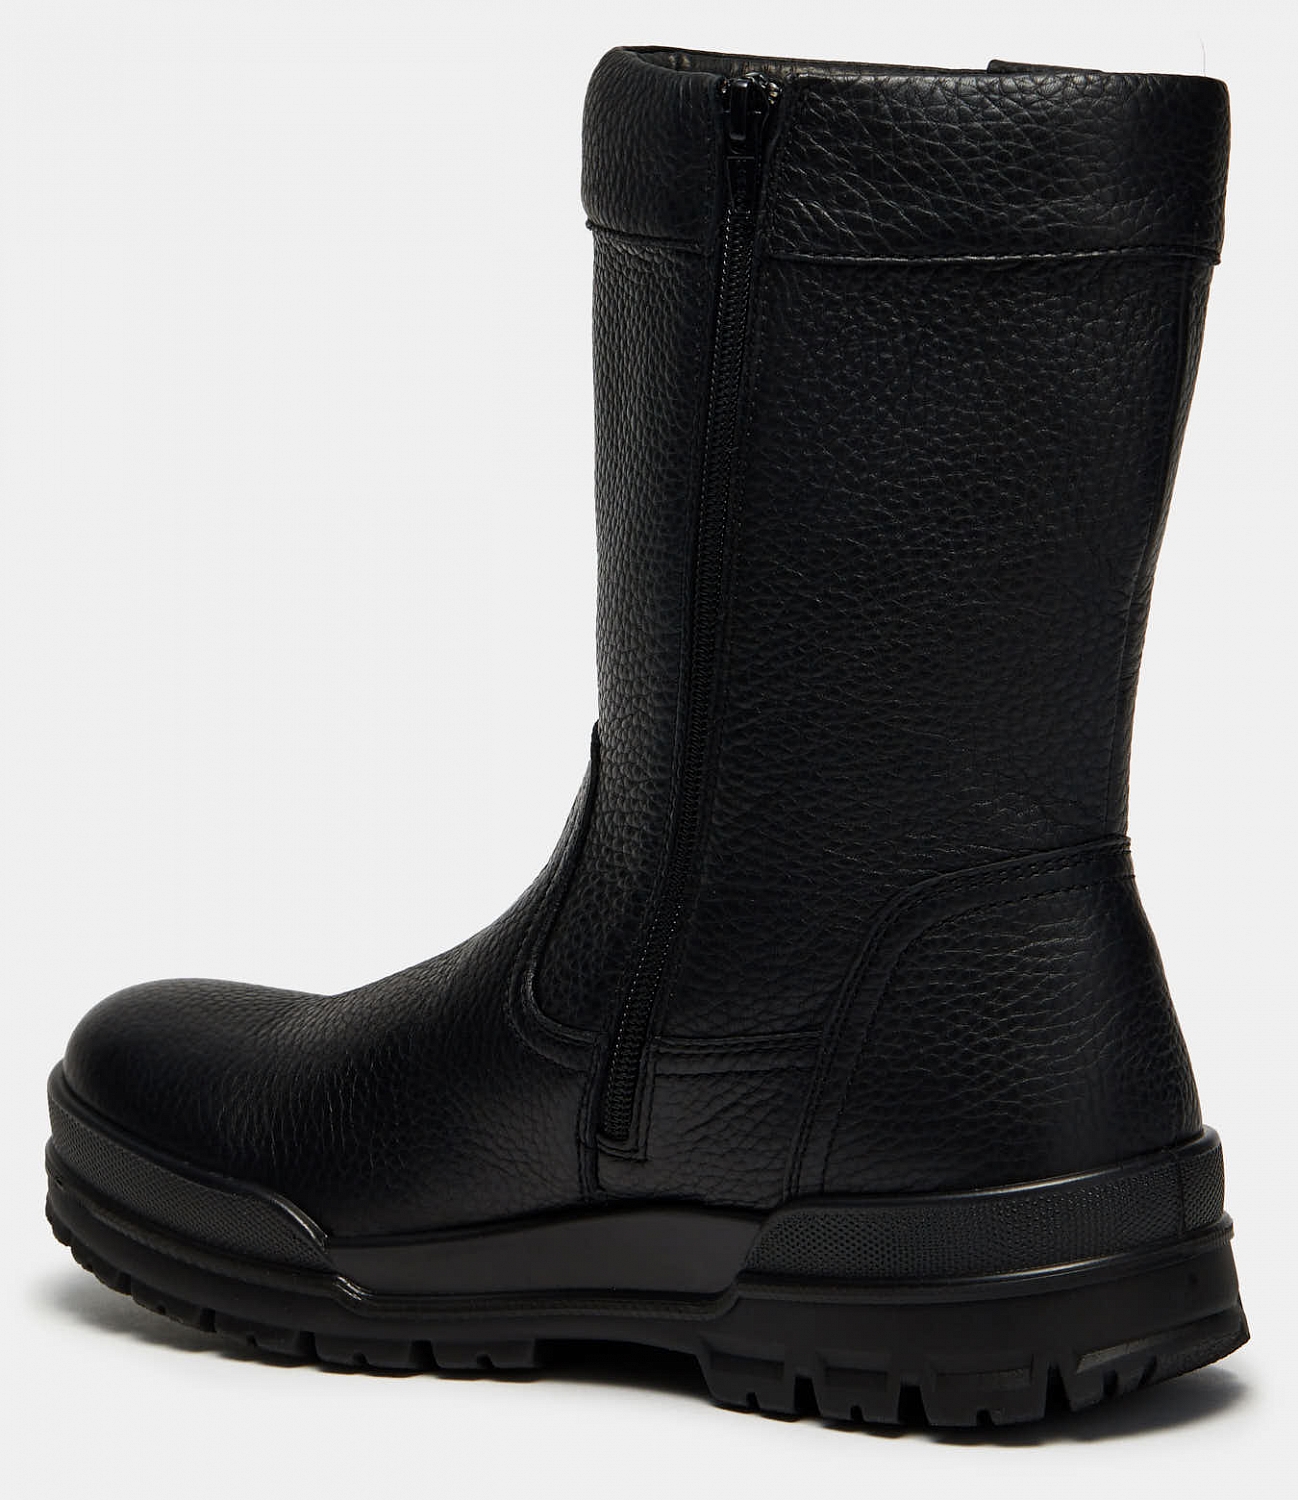 Сапоги мужские ROVER (цвет черный, натуральная кожа) — купить по цене 4490  р. в интернет-магазине RALF RINGER | Стильная мужская обувь в Москве